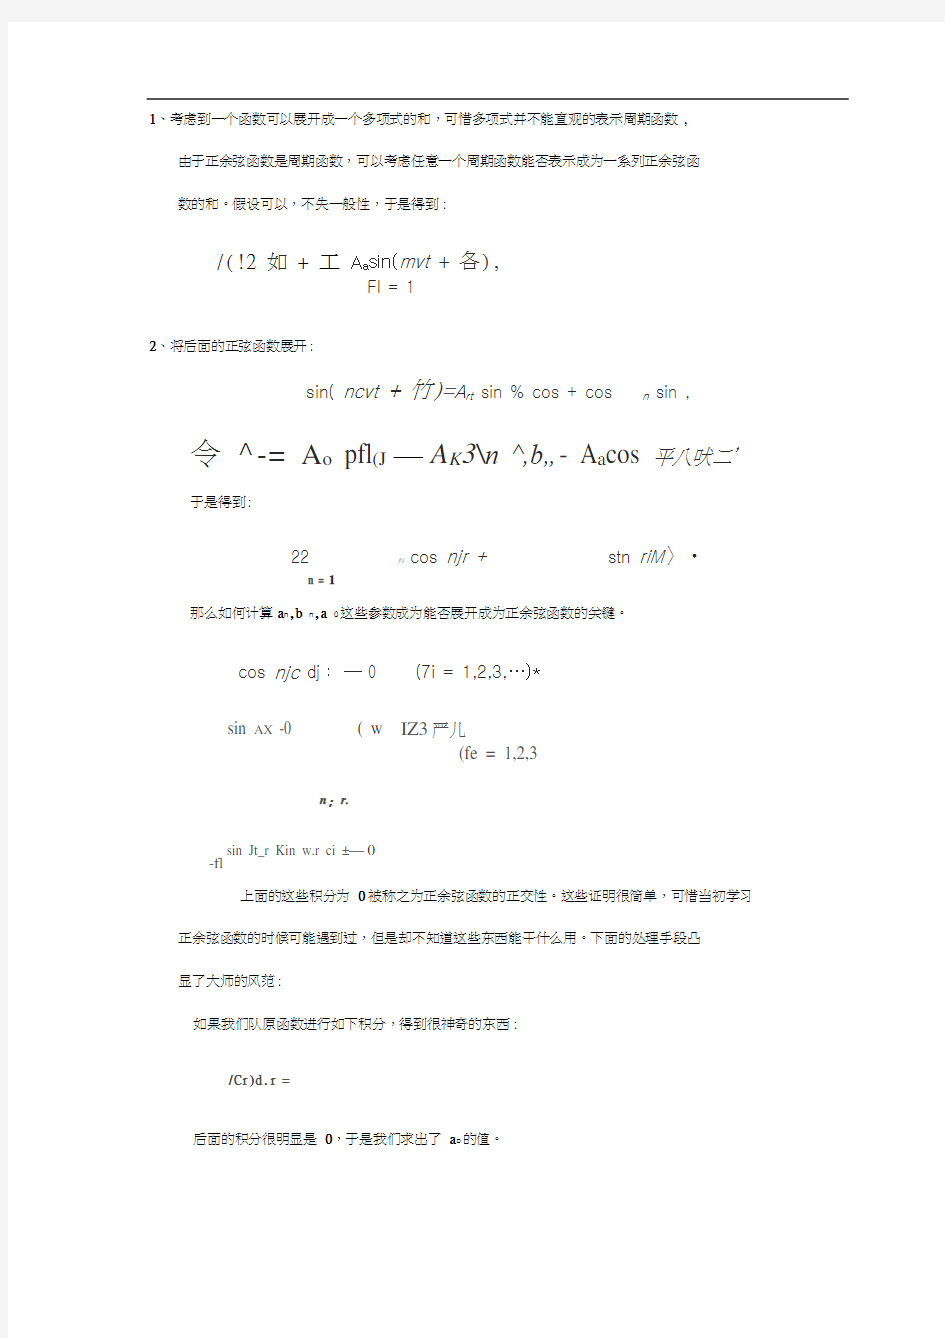 傅里叶变换的由来及复数下的傅里叶变换公式证明